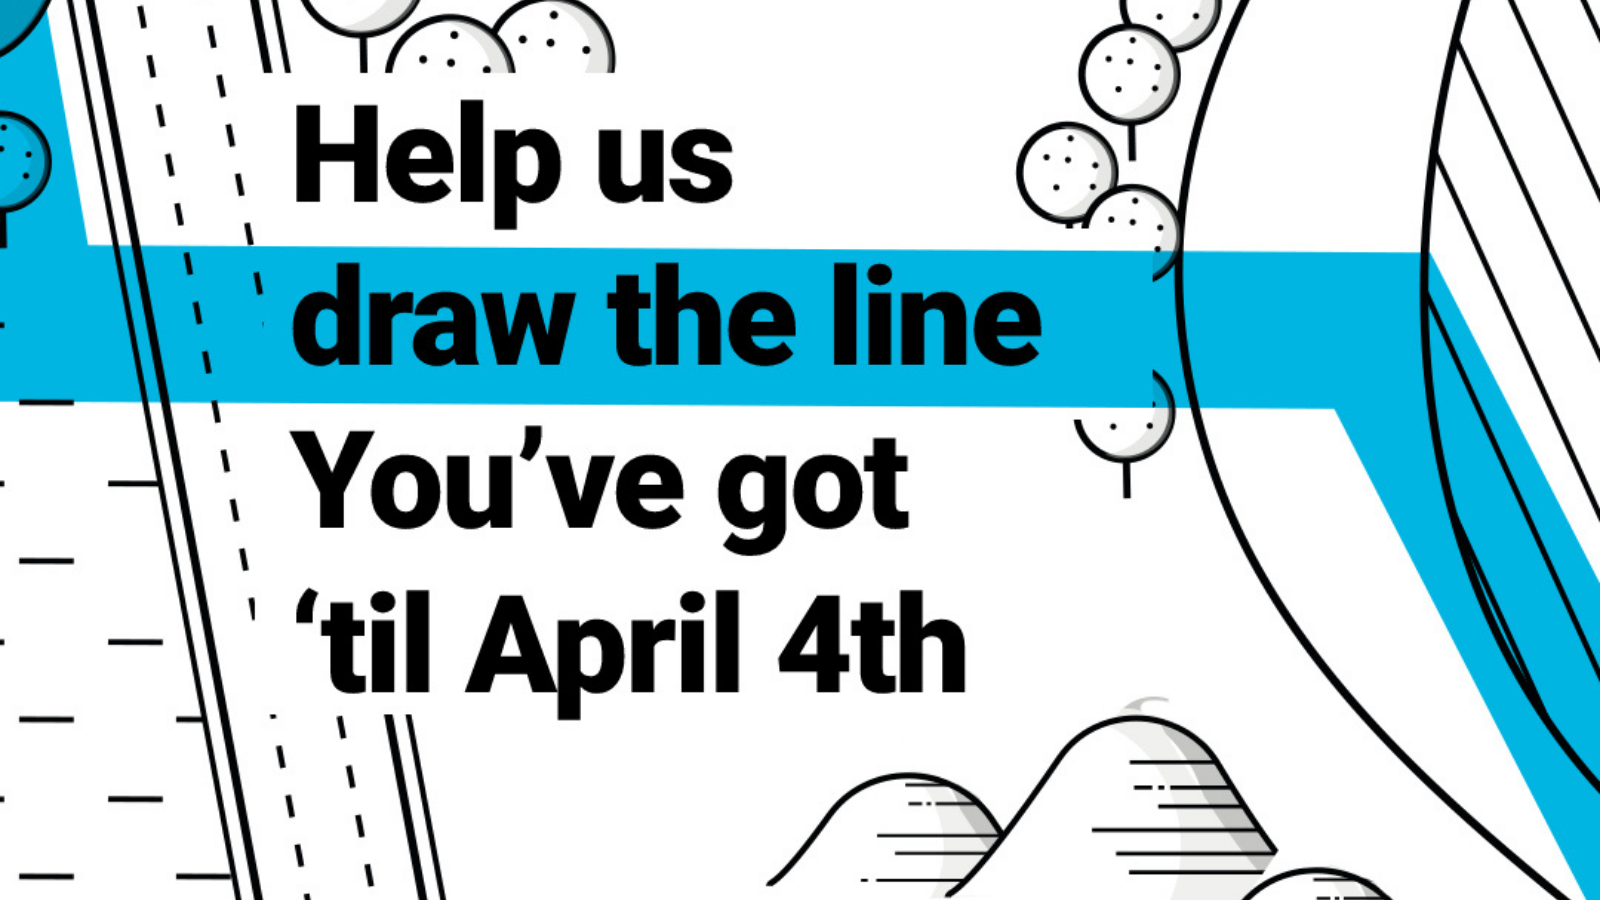 Help us draw the line. You've got 'til April 4th